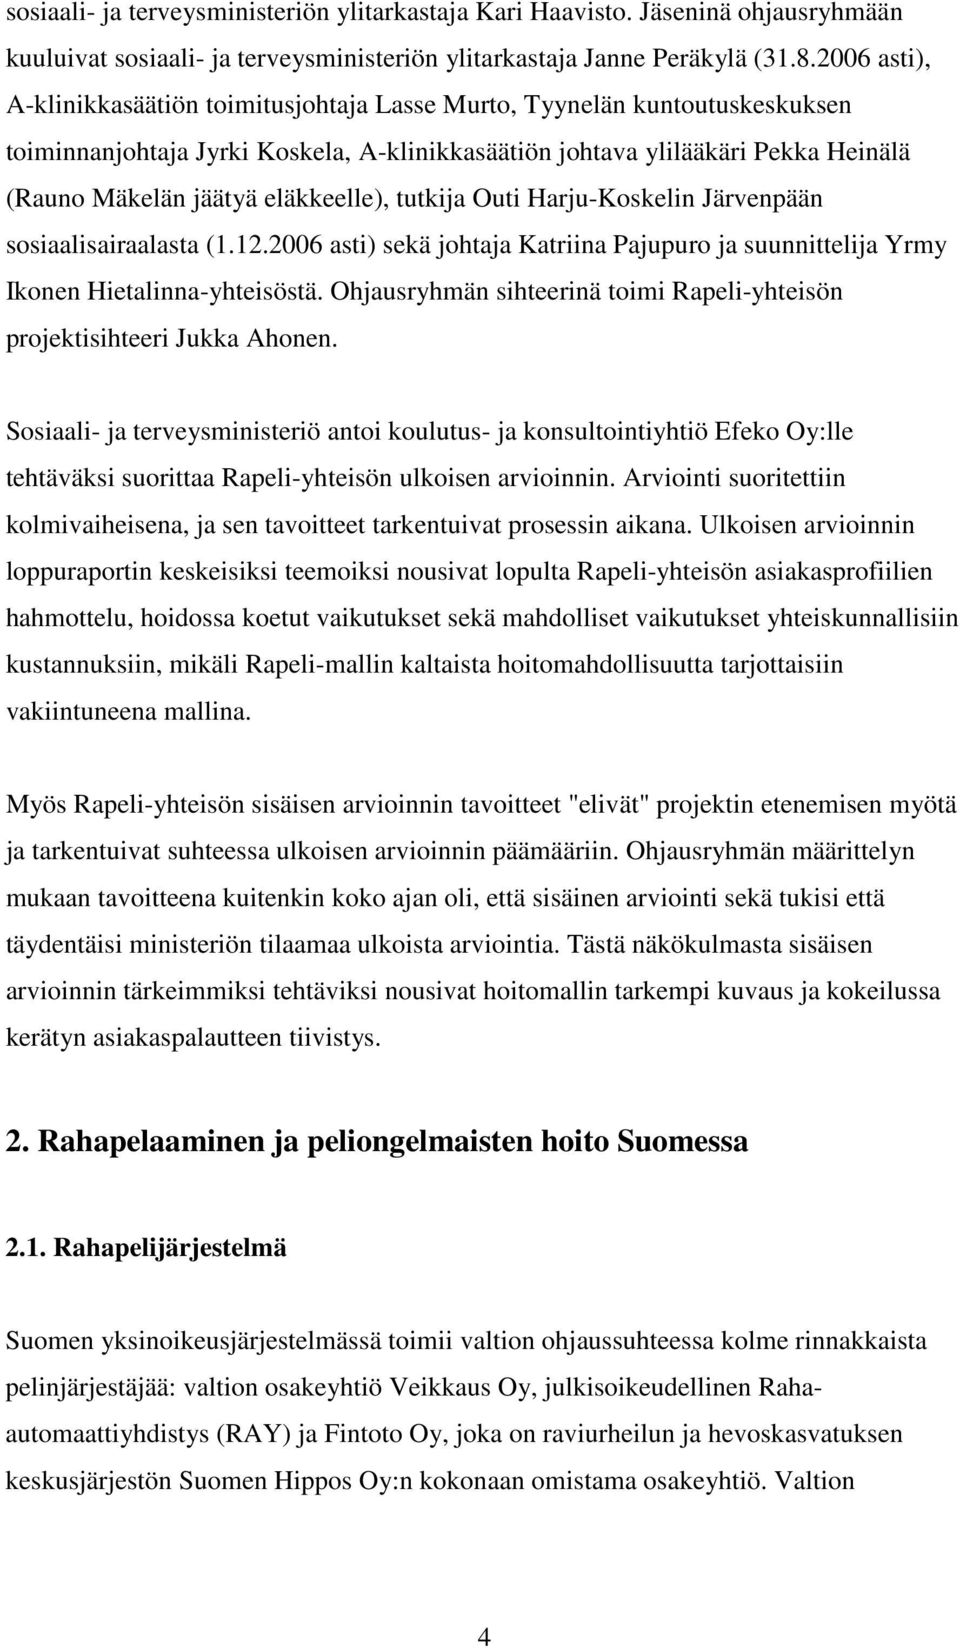 eläkkeelle), tutkija Outi Harju-Koskelin Järvenpään sosiaalisairaalasta (1.12.2006 asti) sekä johtaja Katriina Pajupuro ja suunnittelija Yrmy Ikonen Hietalinna-yhteisöstä.